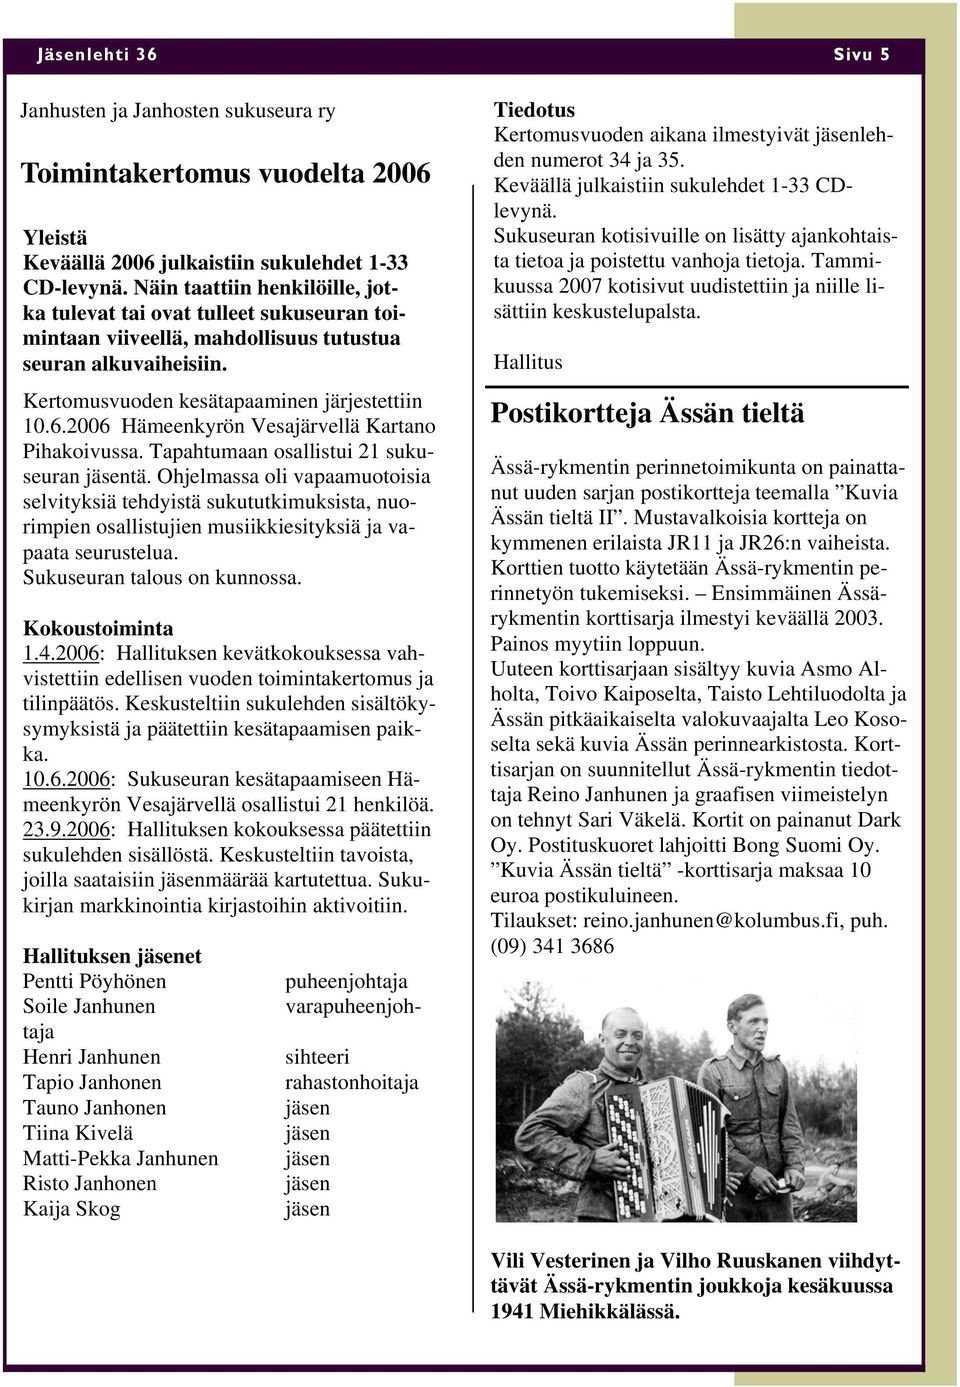 2006 Hämeenkyrön Vesajärvellä Kartano Pihakoivussa. Tapahtumaan osallistui 21 sukuseuran jäsentä.